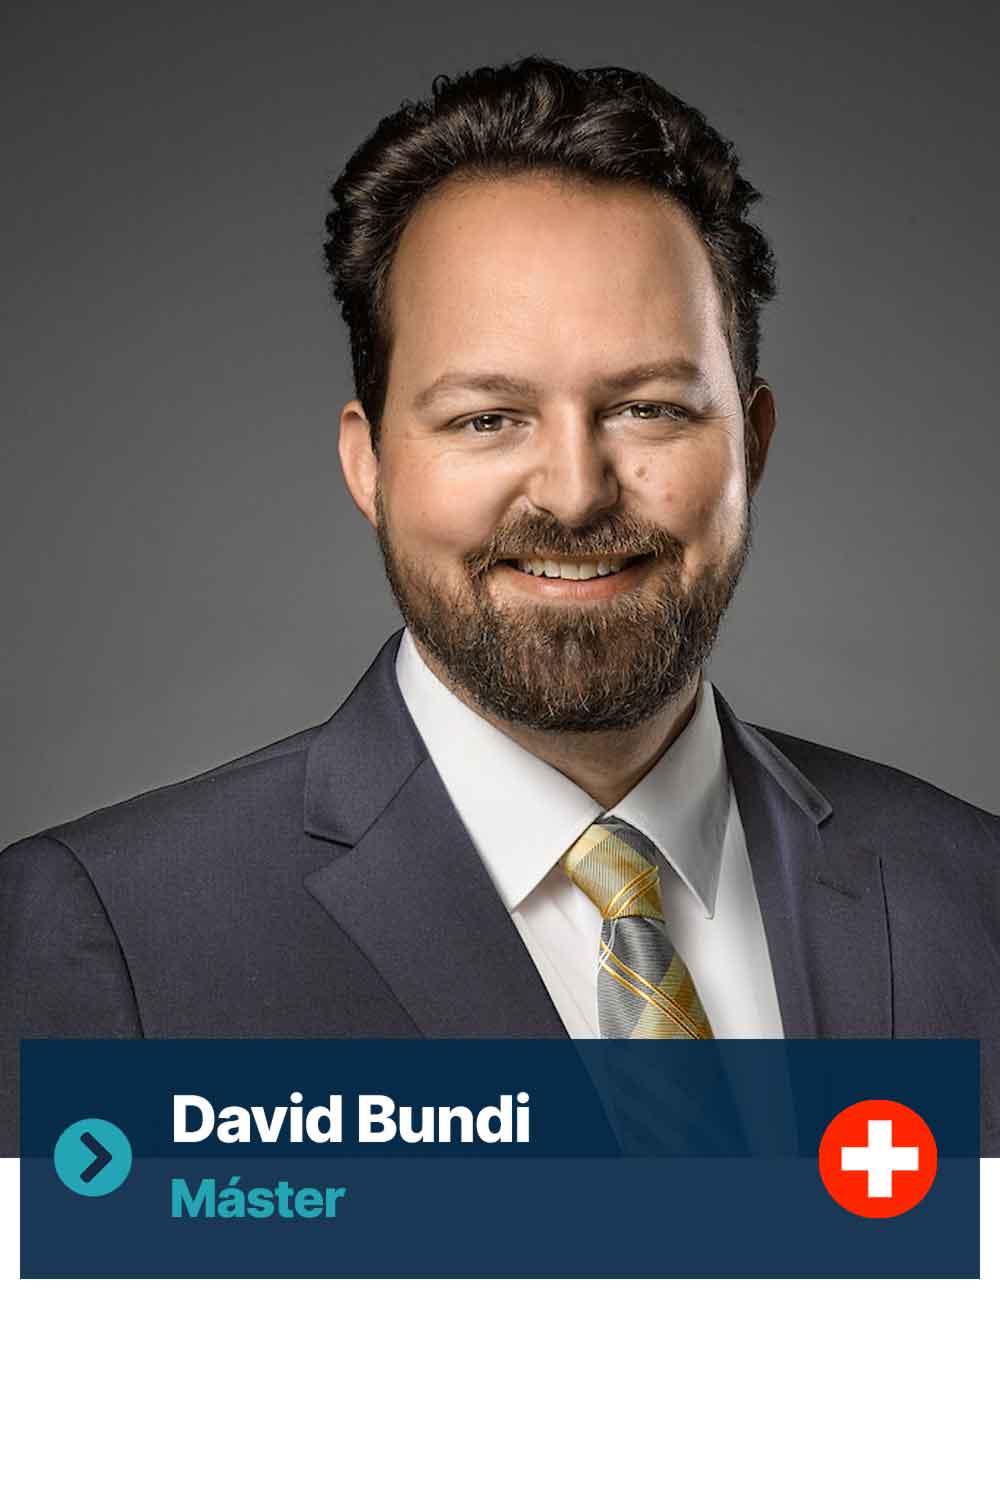 David Bundi